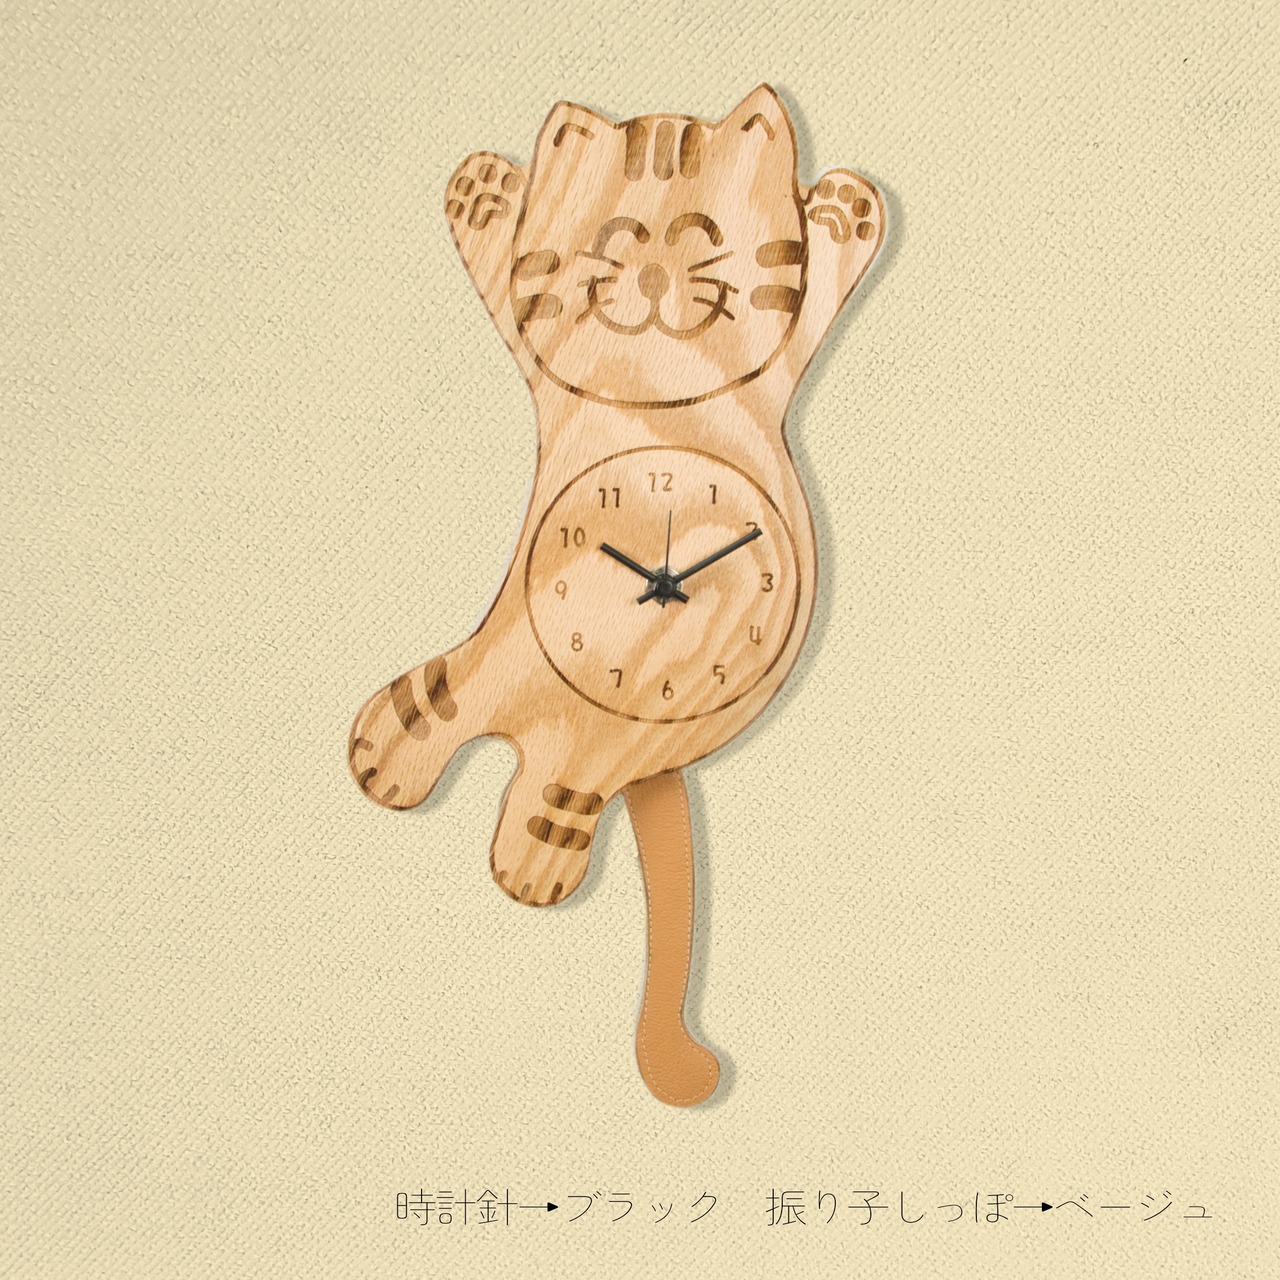 Cat Furiko clock